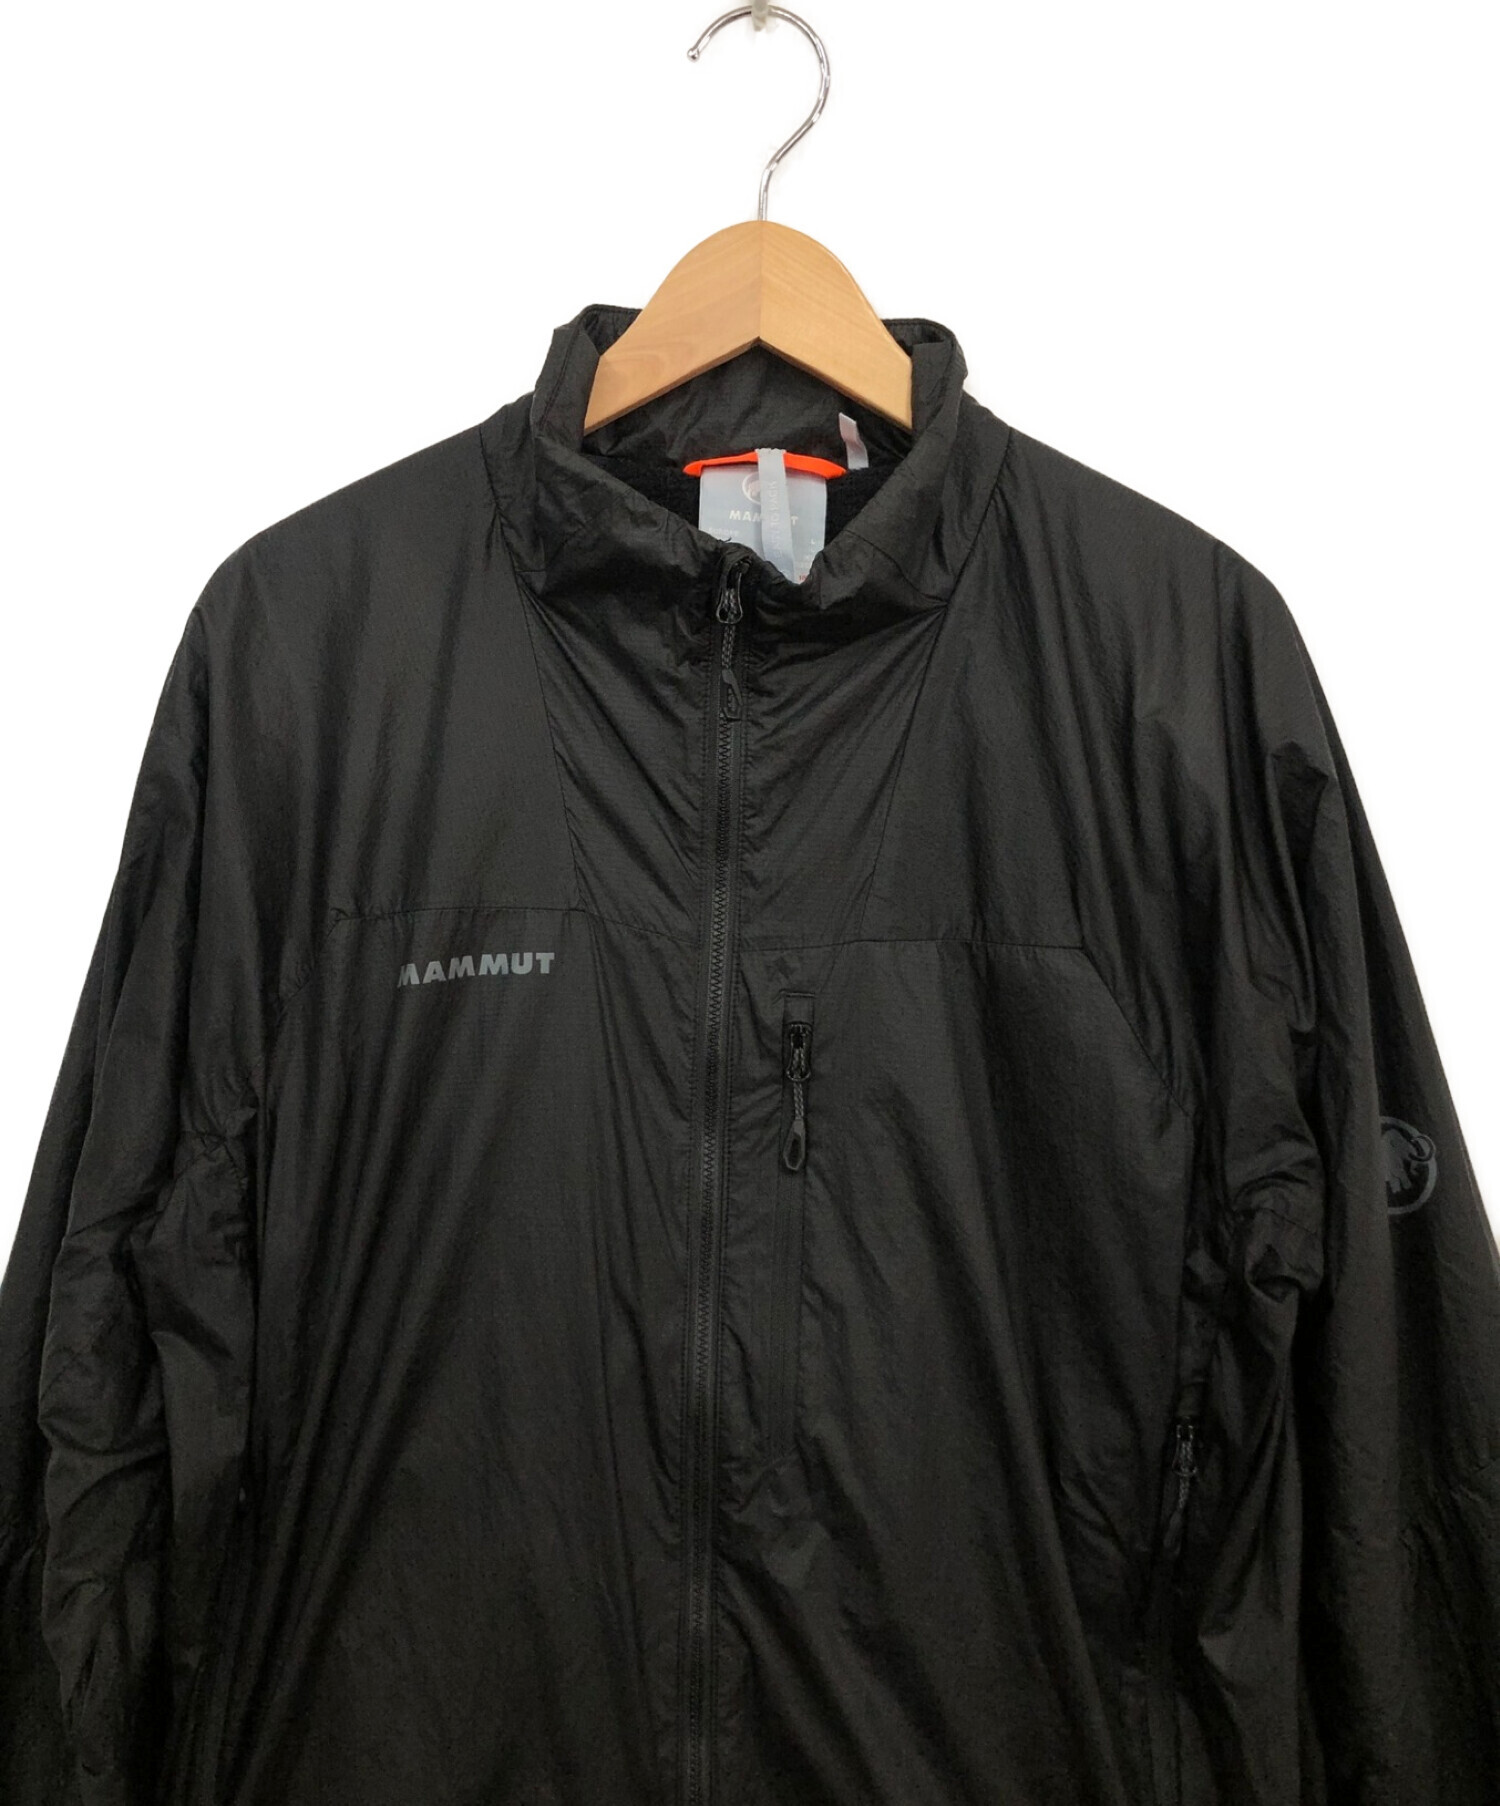 MAMMUT (マムート) ナイロンジャケット ブラック サイズ:XL